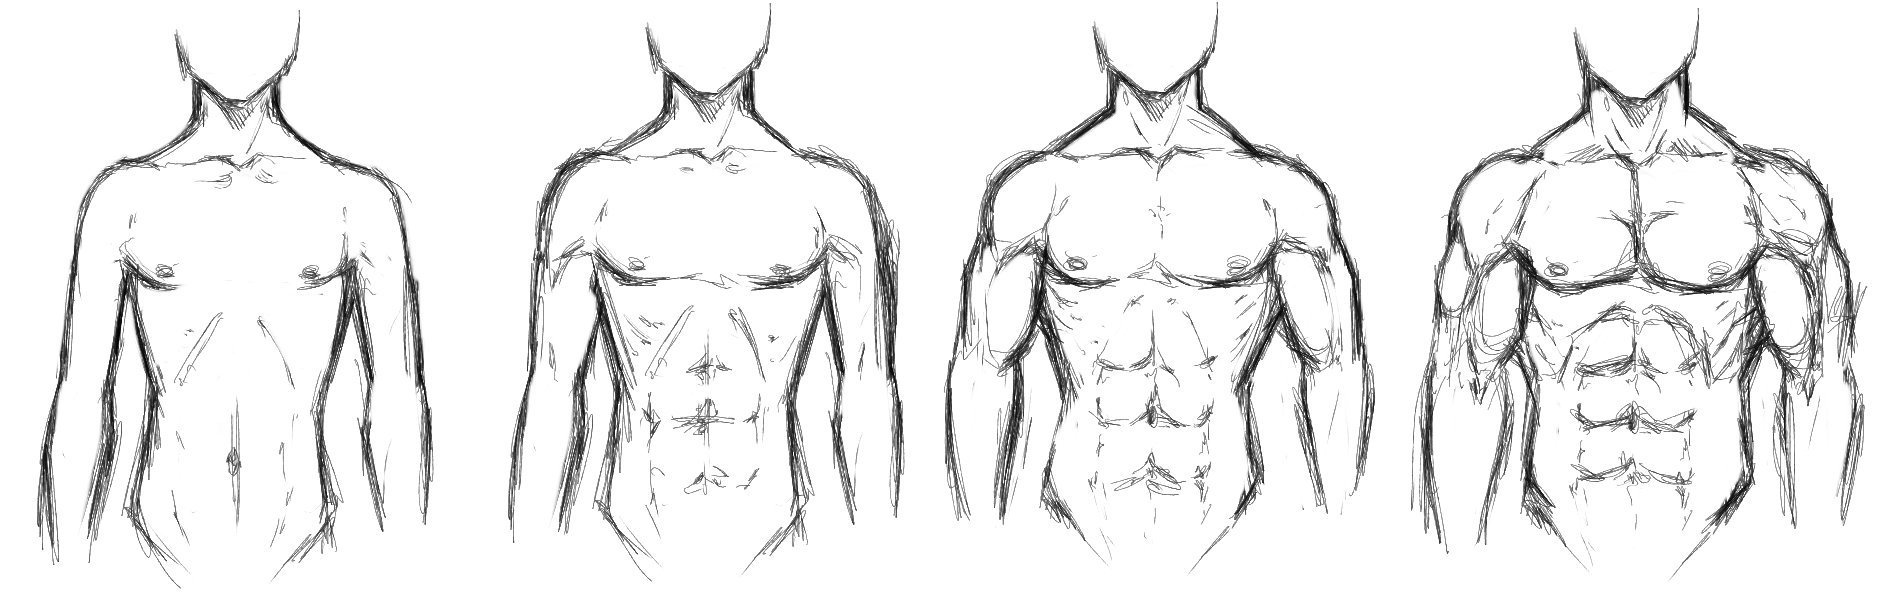 Туториал по рисованию тела мужчины